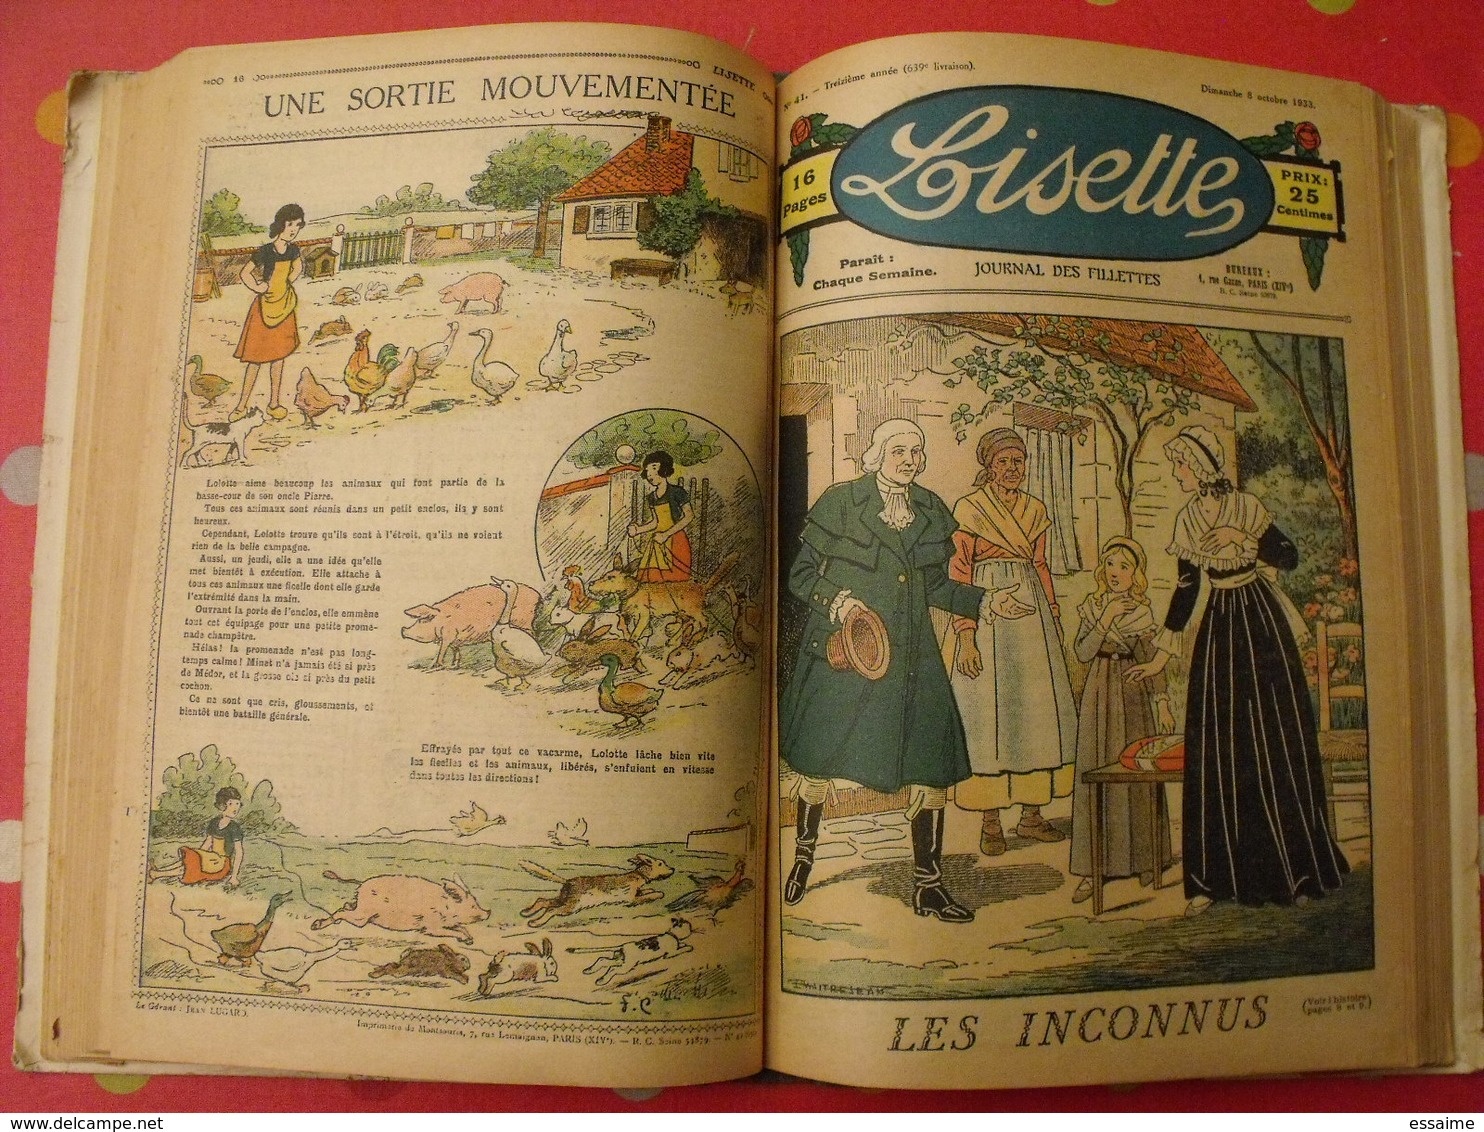 Lisette, album 13 XIII. 1933. recueil reliure. le rallic levesque maitrejean cuvillier bourdin dot petite annie mc clure